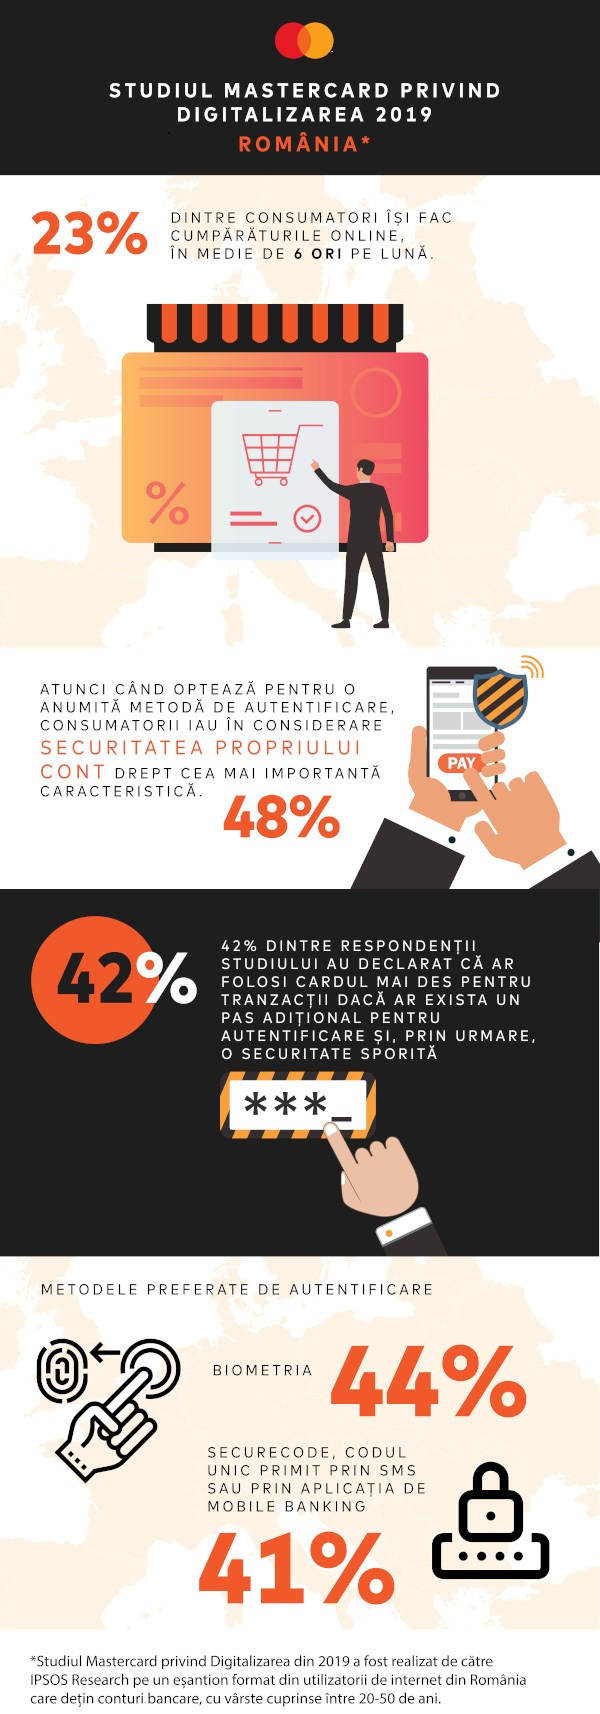 48% dintre consumatorii din România consideră securitatea propriului cont cea mai importantă caracteristică atunci când aleg să plătească cu un dispozitiv digital